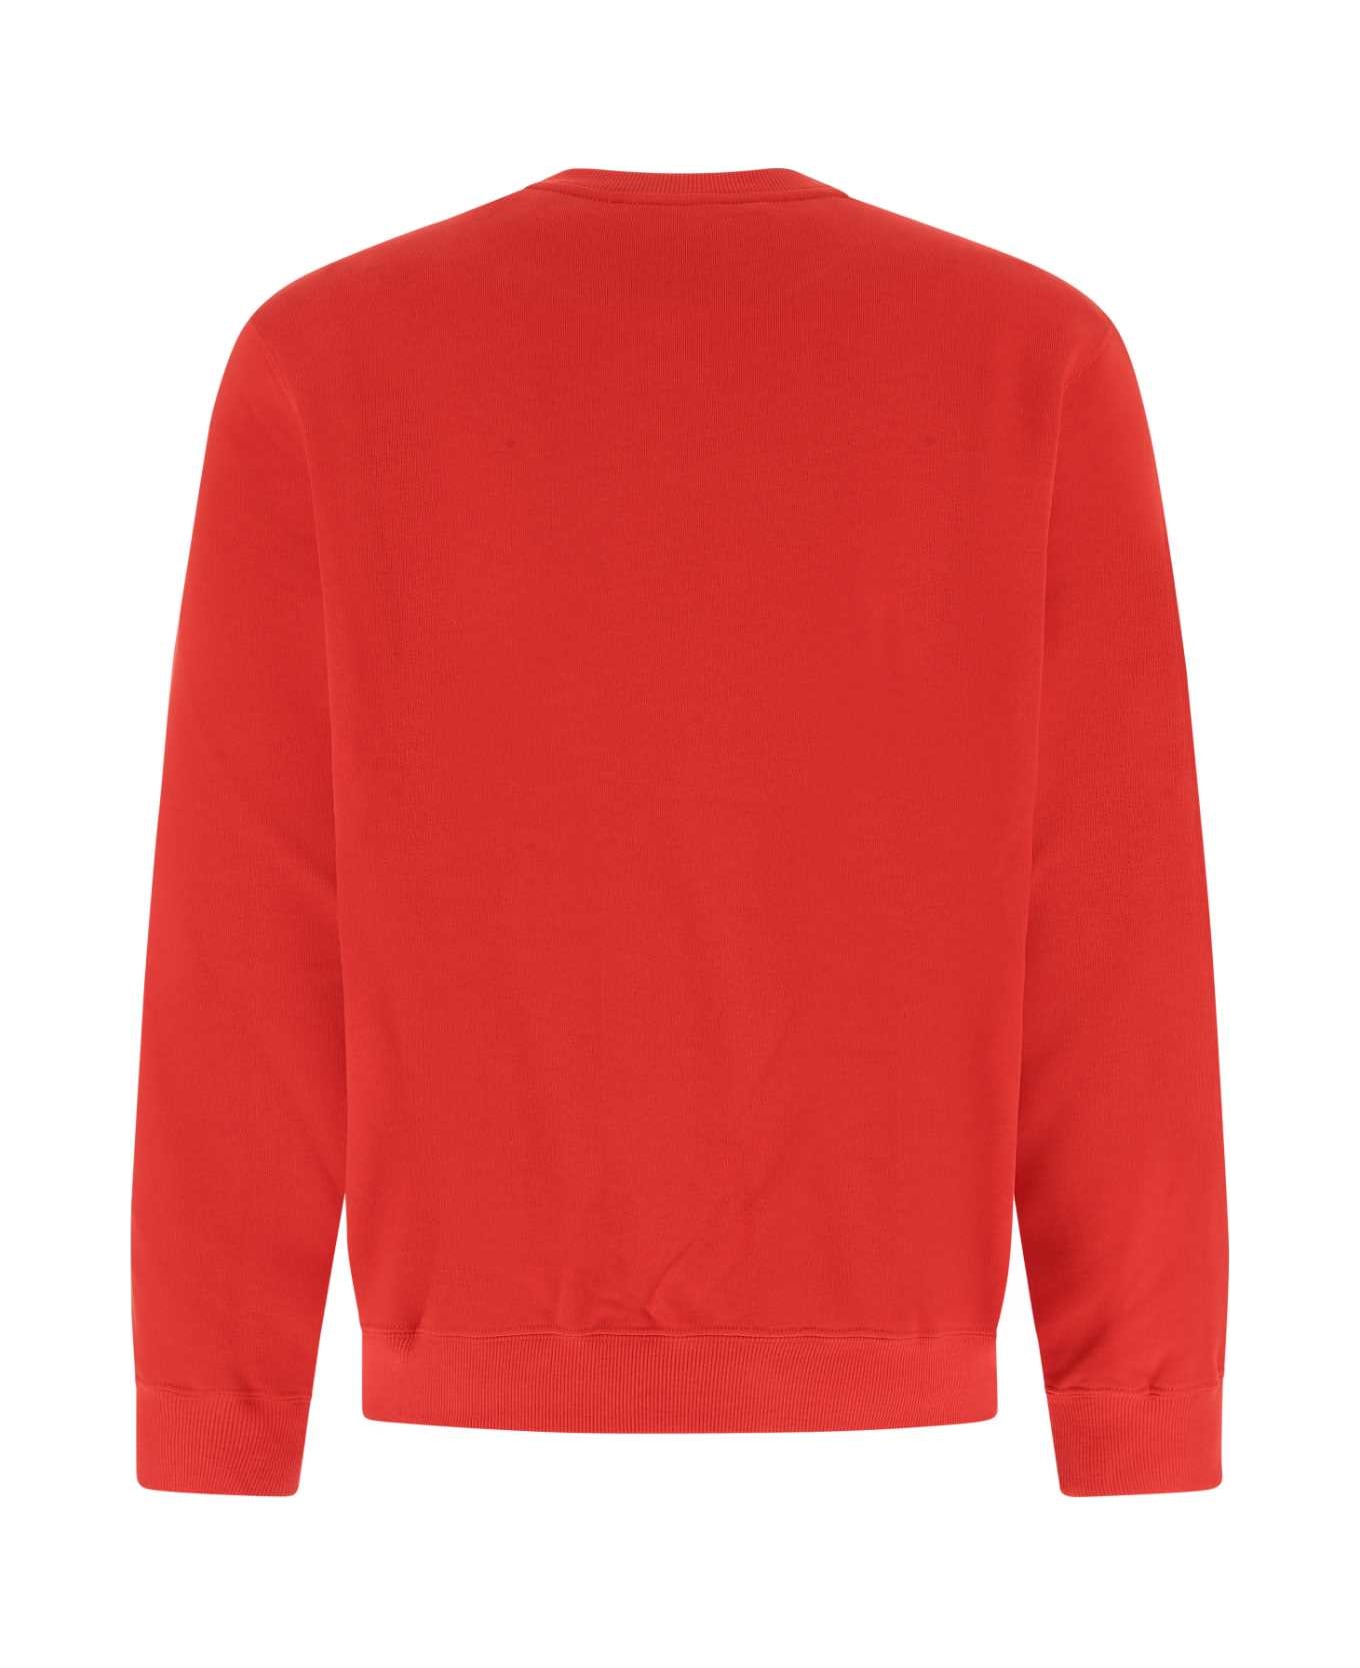 Koché Red Cotton Sweatshirt - 314 フリース